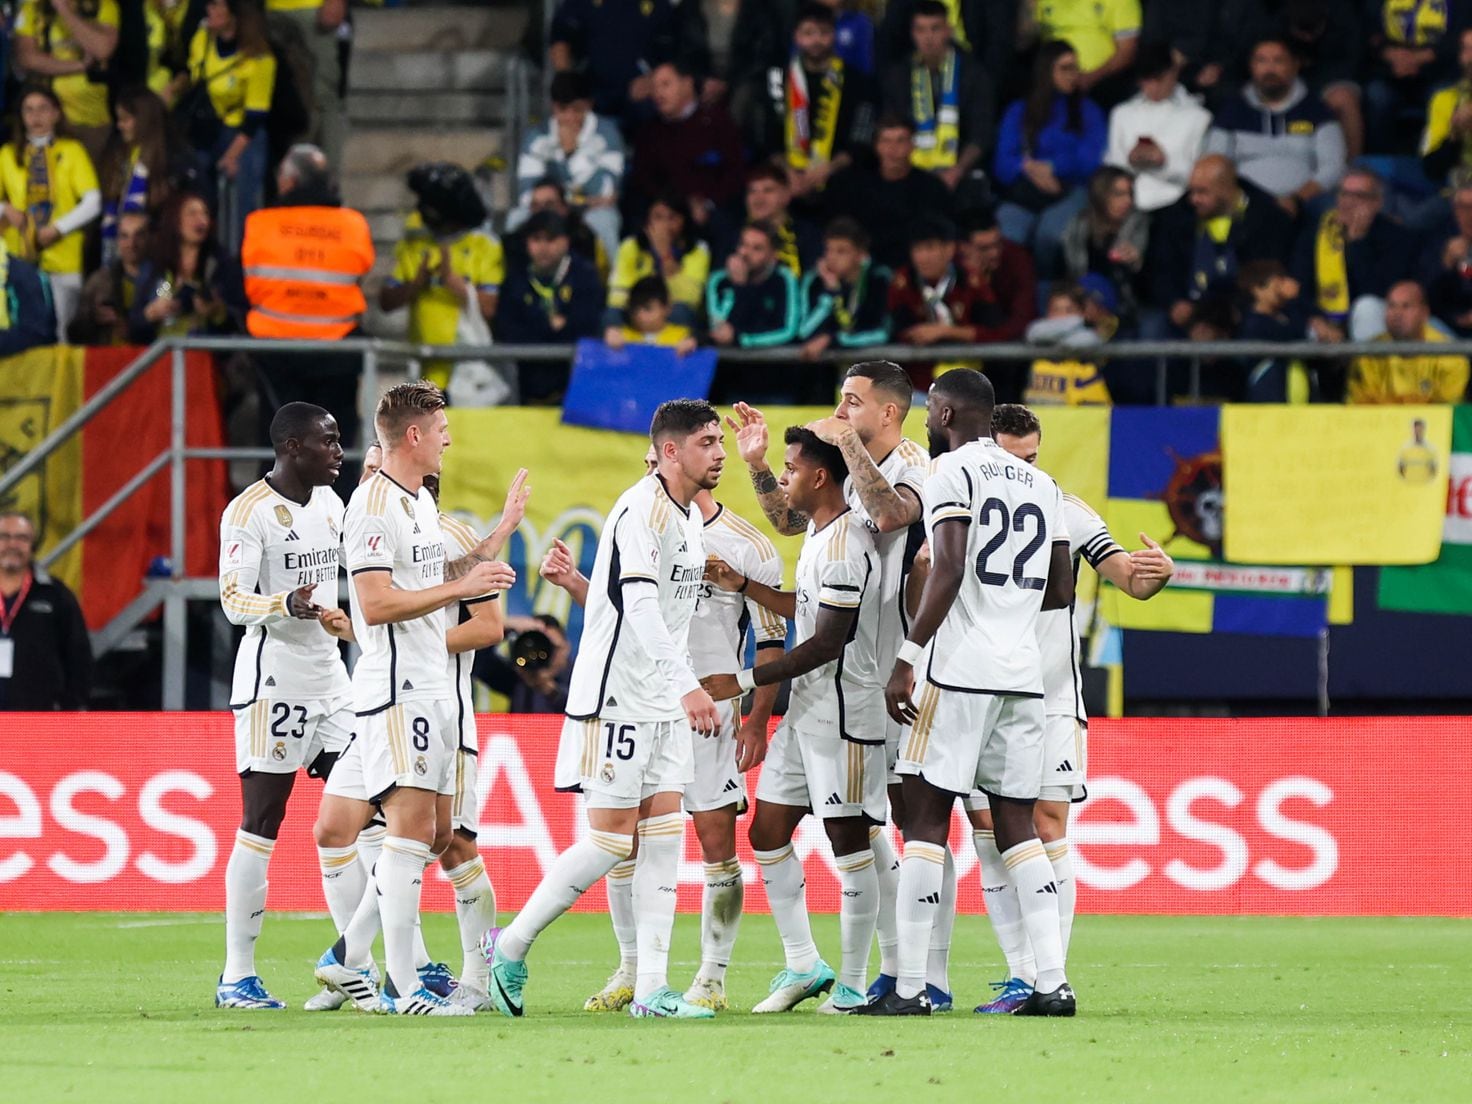 O Jogo do Fenerbahçe: História, Conquistas e Rivalidades